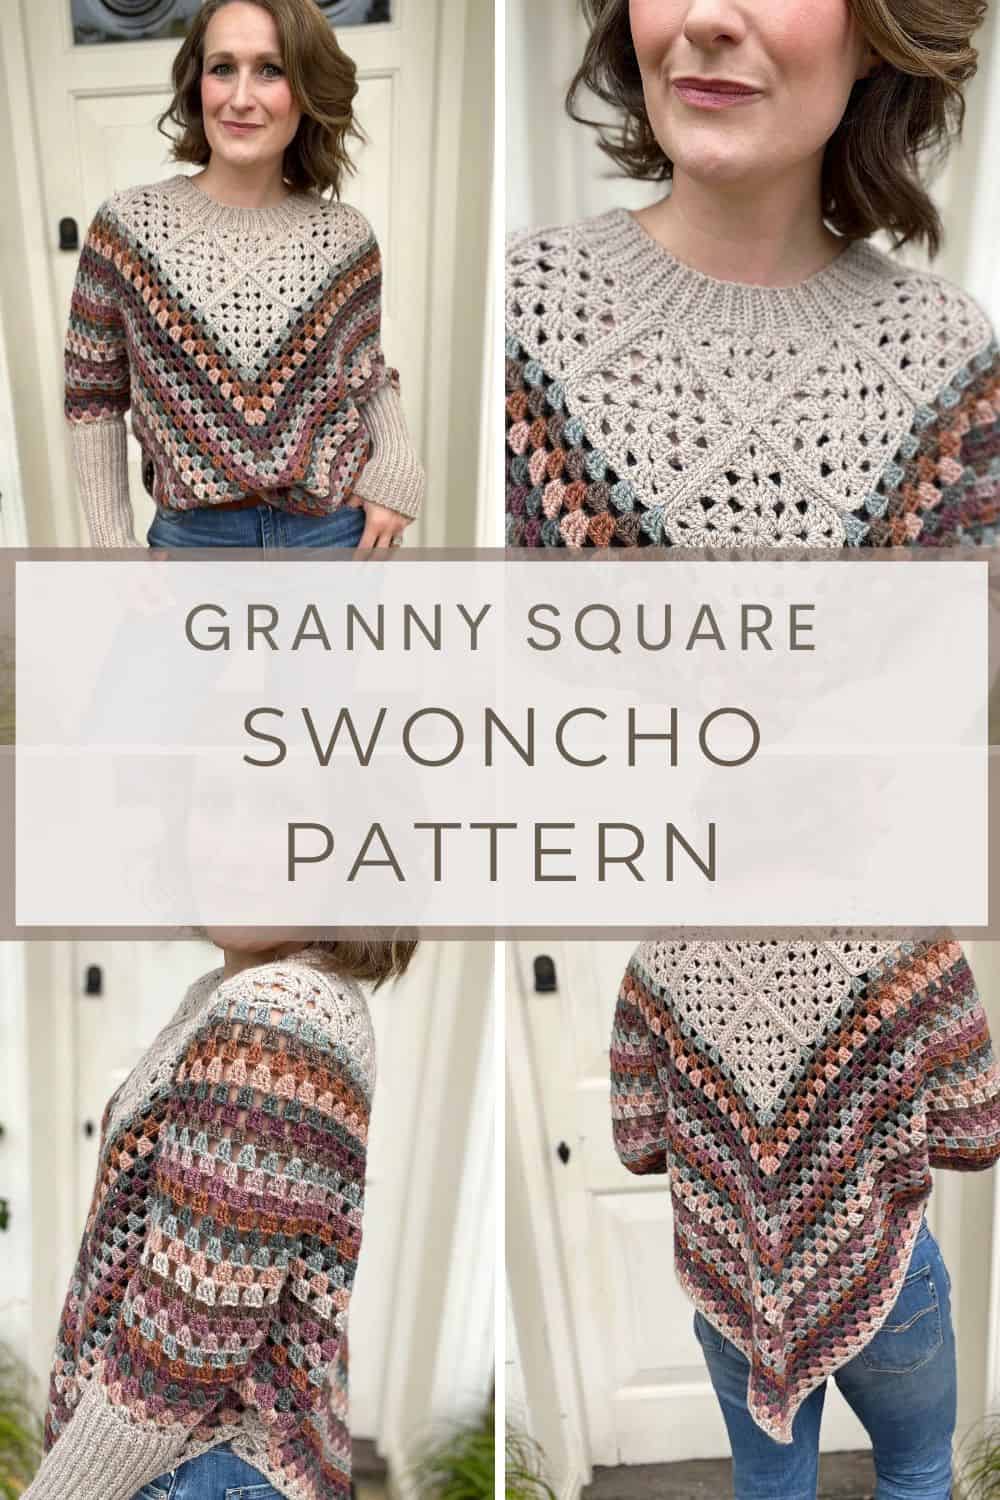 Granny square swoncho pattern.